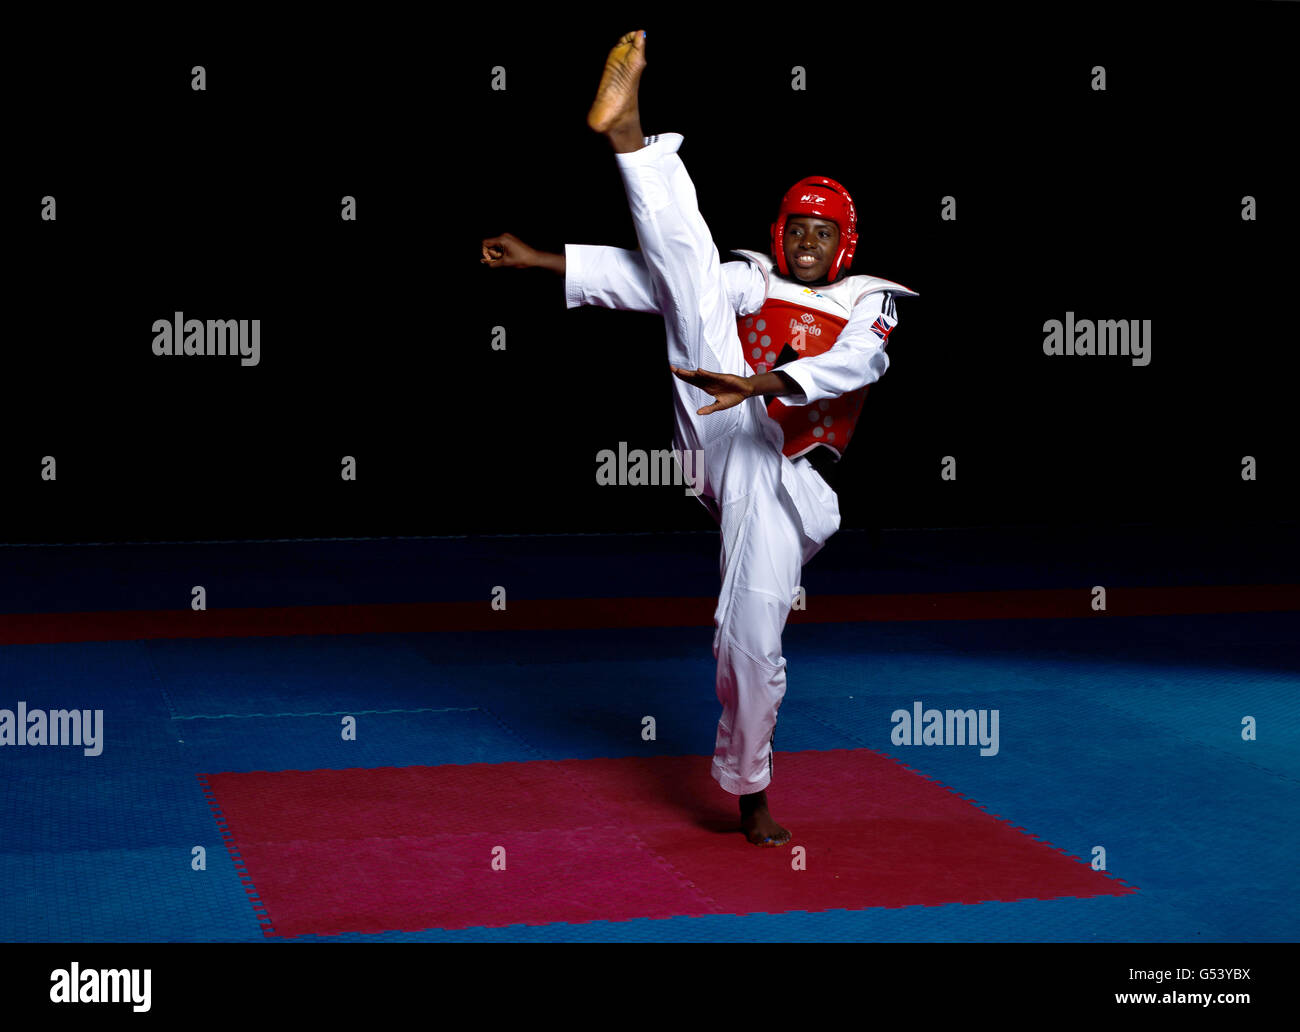 Olympics taekwondo hi-res stock photography and images - Alamy